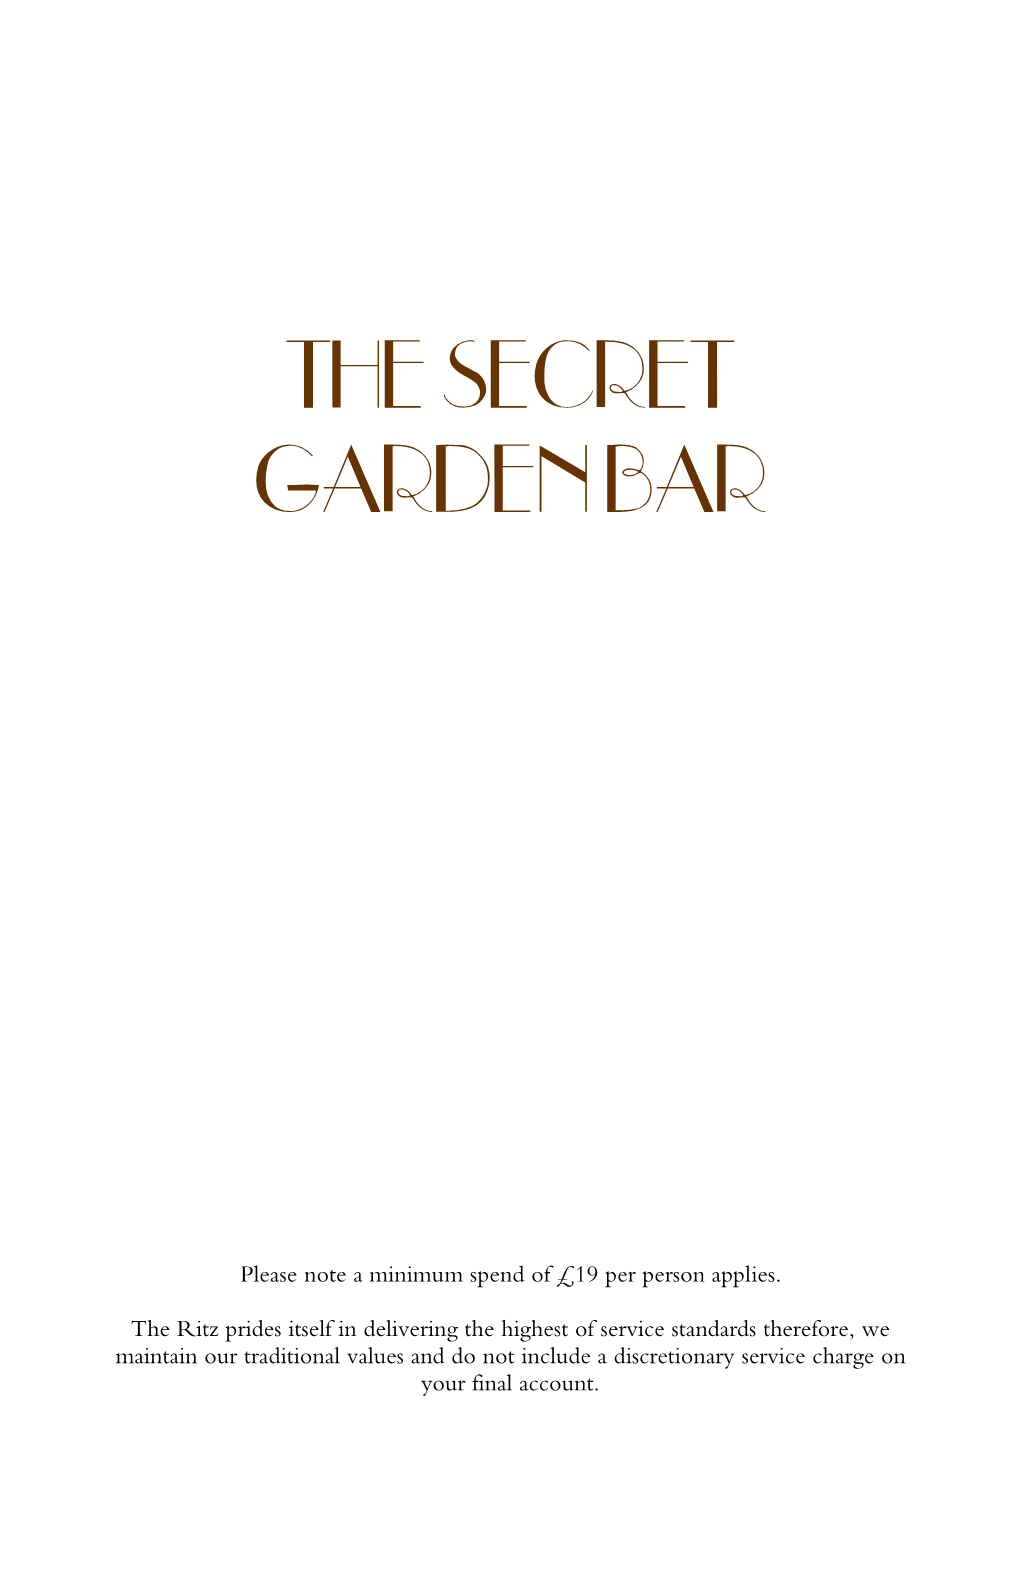 The Secret Garden Bar